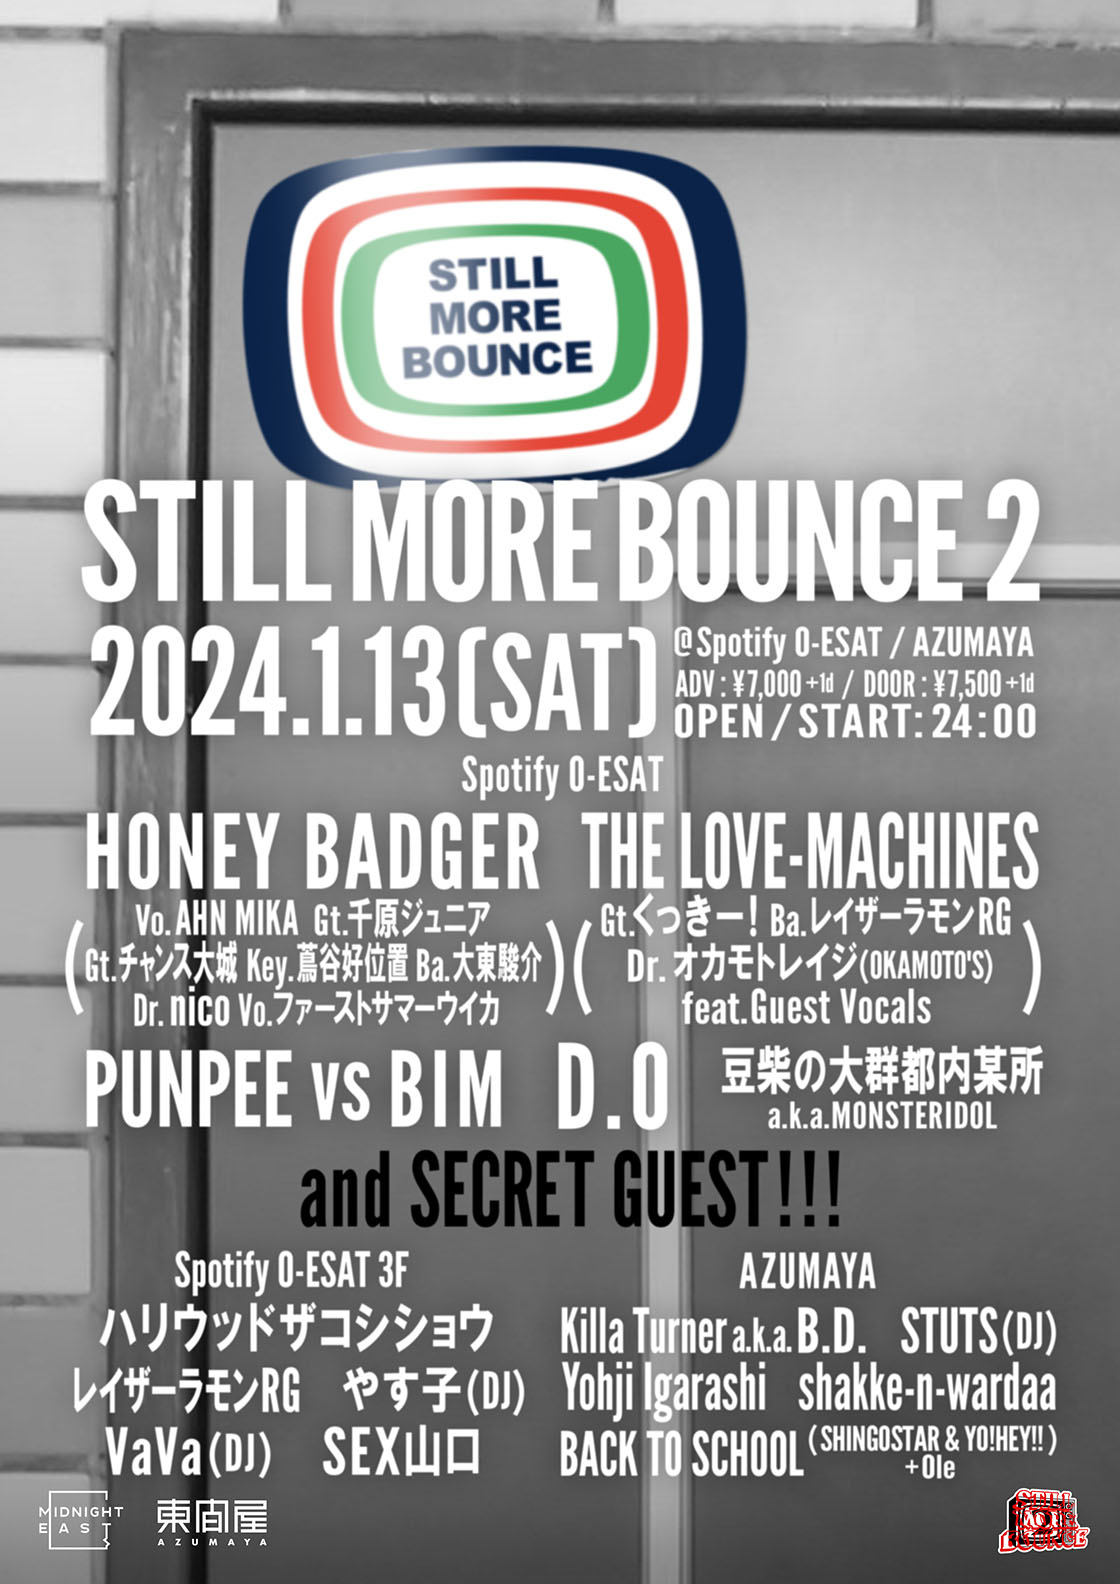 藤井健太郎主催イベント、STILL MORE BOUNCE 2にSTUTSの出演が決定 